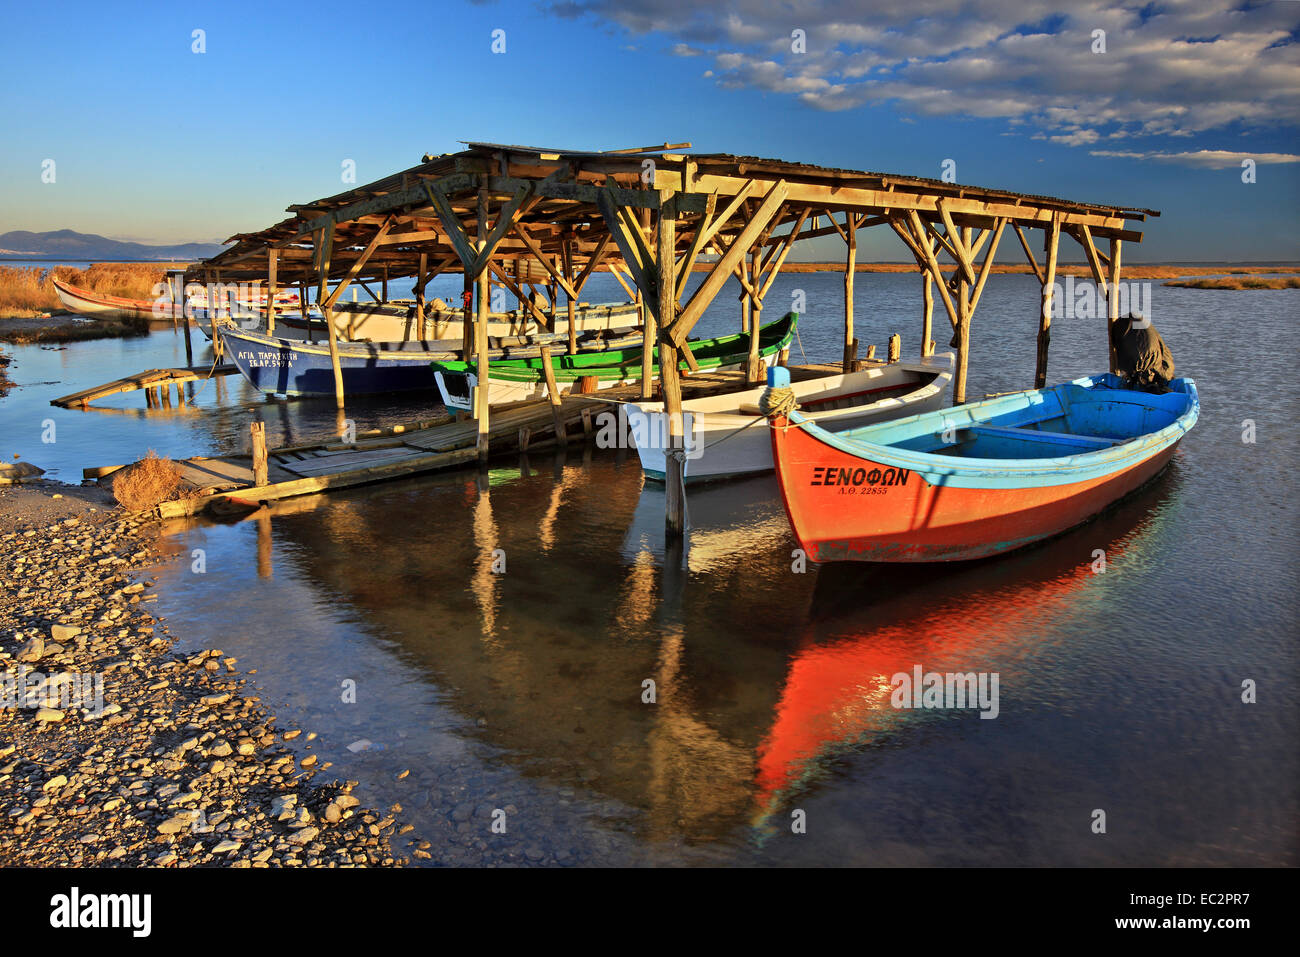 Fishing boats at the Delta of Aliakmonas river, Pieria - Imathia, Macedonia, Greece. Stock Photo